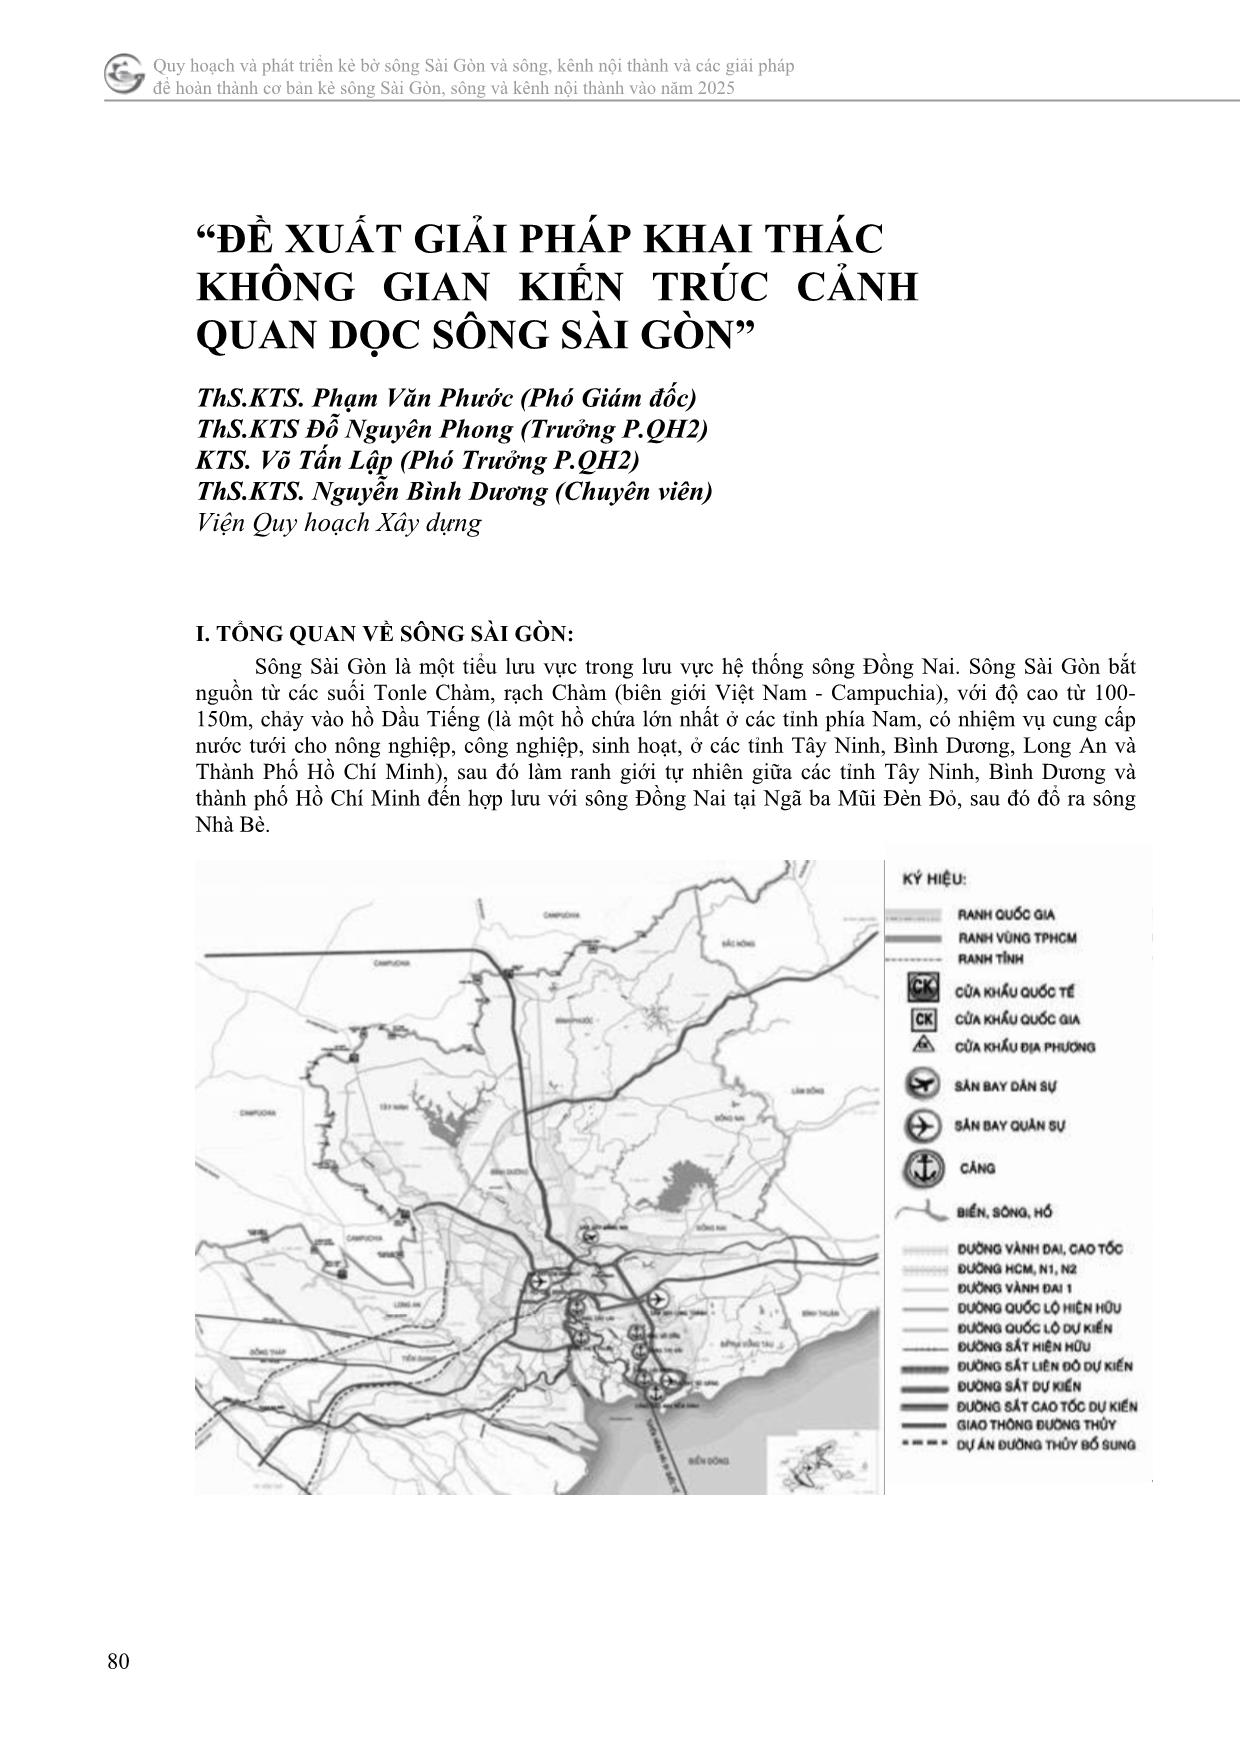 “đề xuất giải pháp khai thác không gian kiến trúc cảnh quan dọc sông Sài Gòn” trang 1